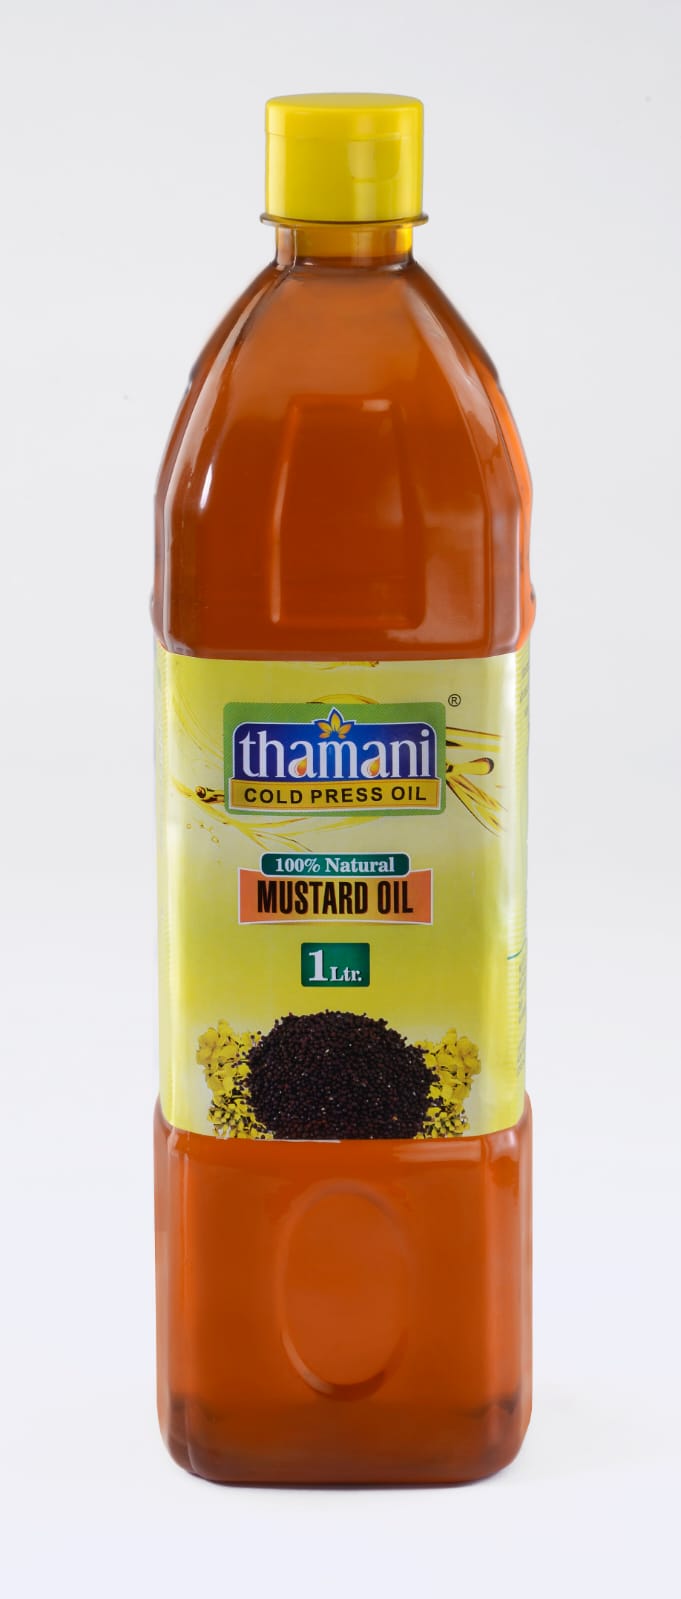 Thamani Mustard Oil